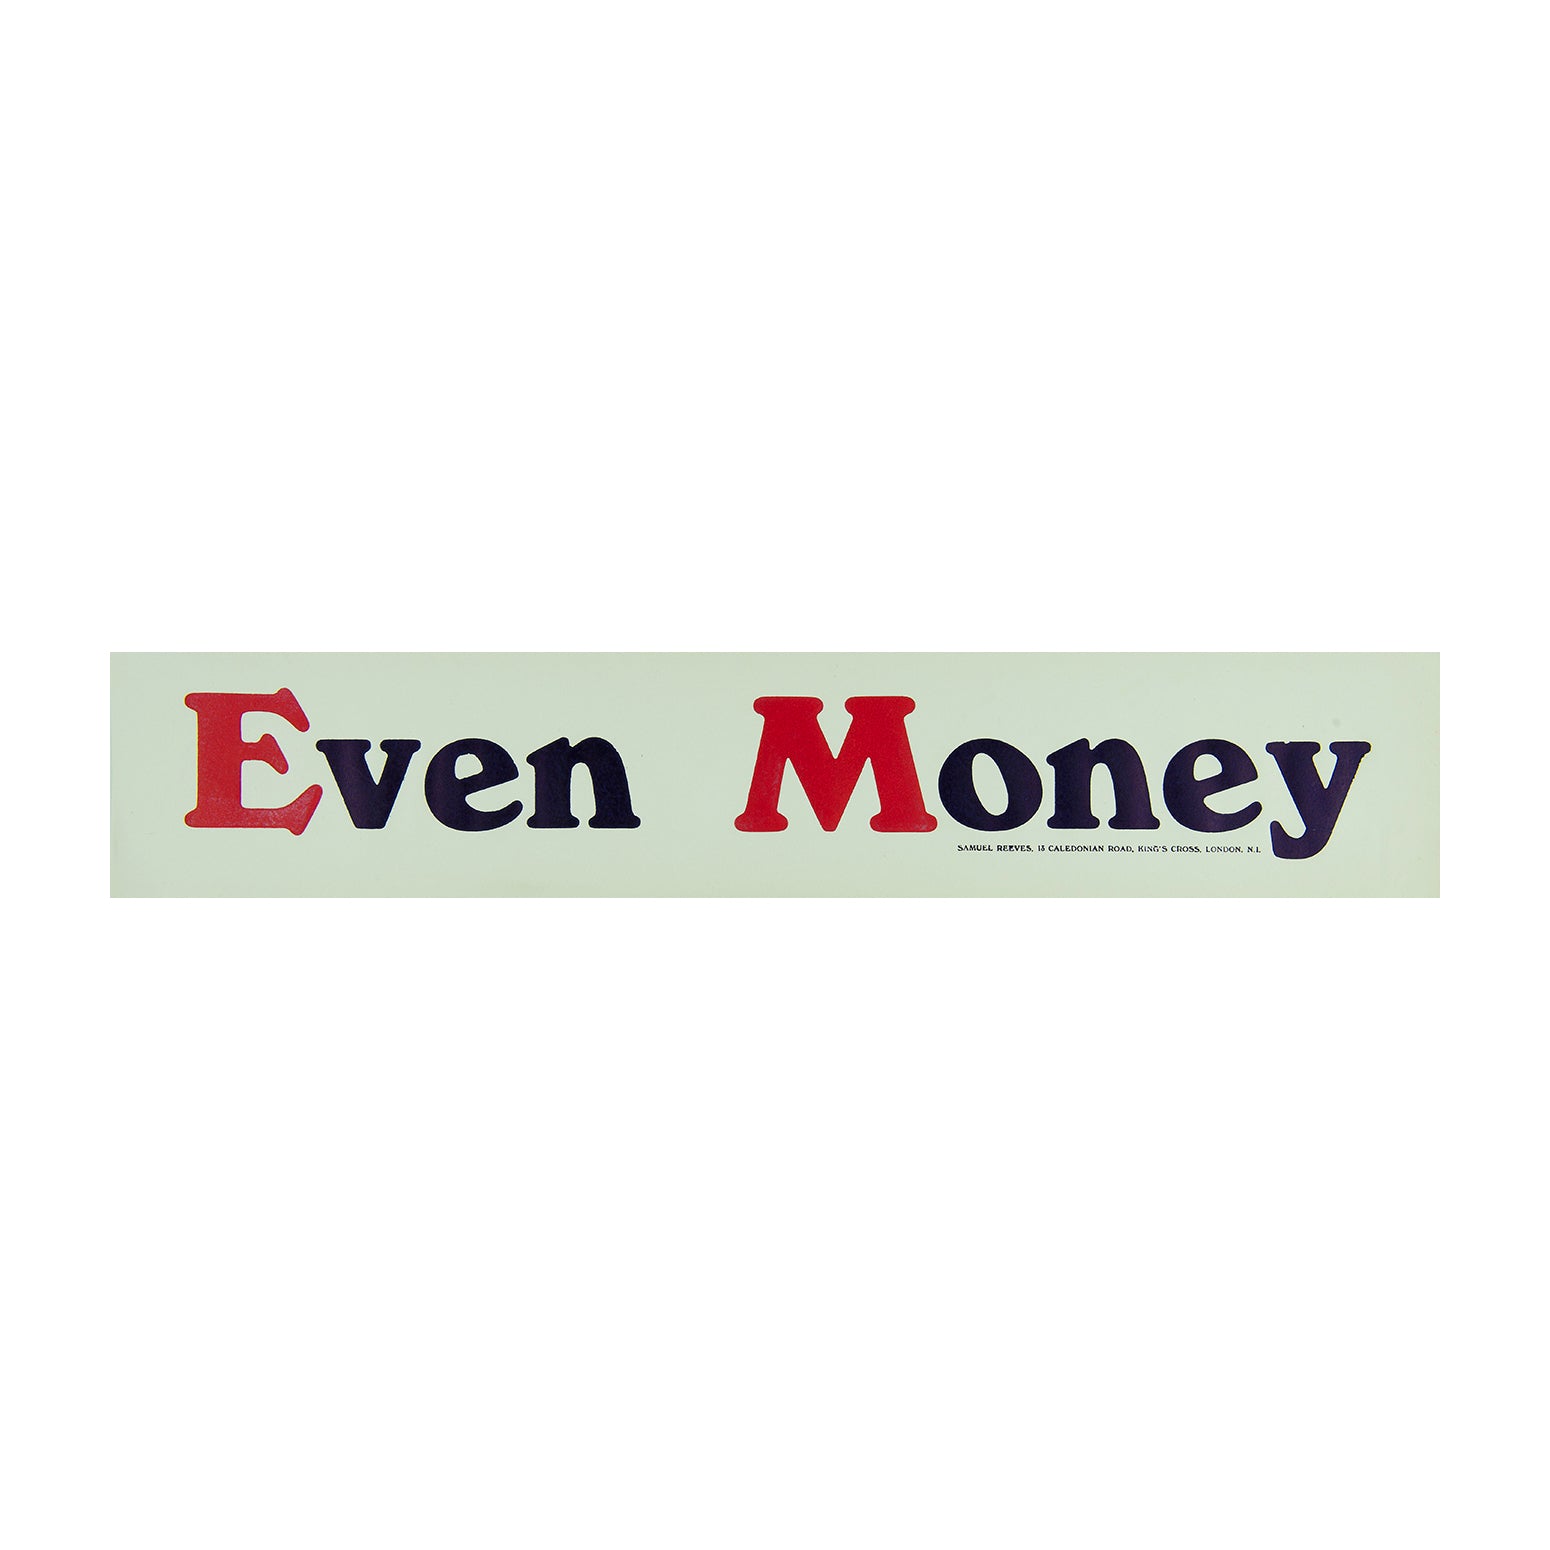 Even Money